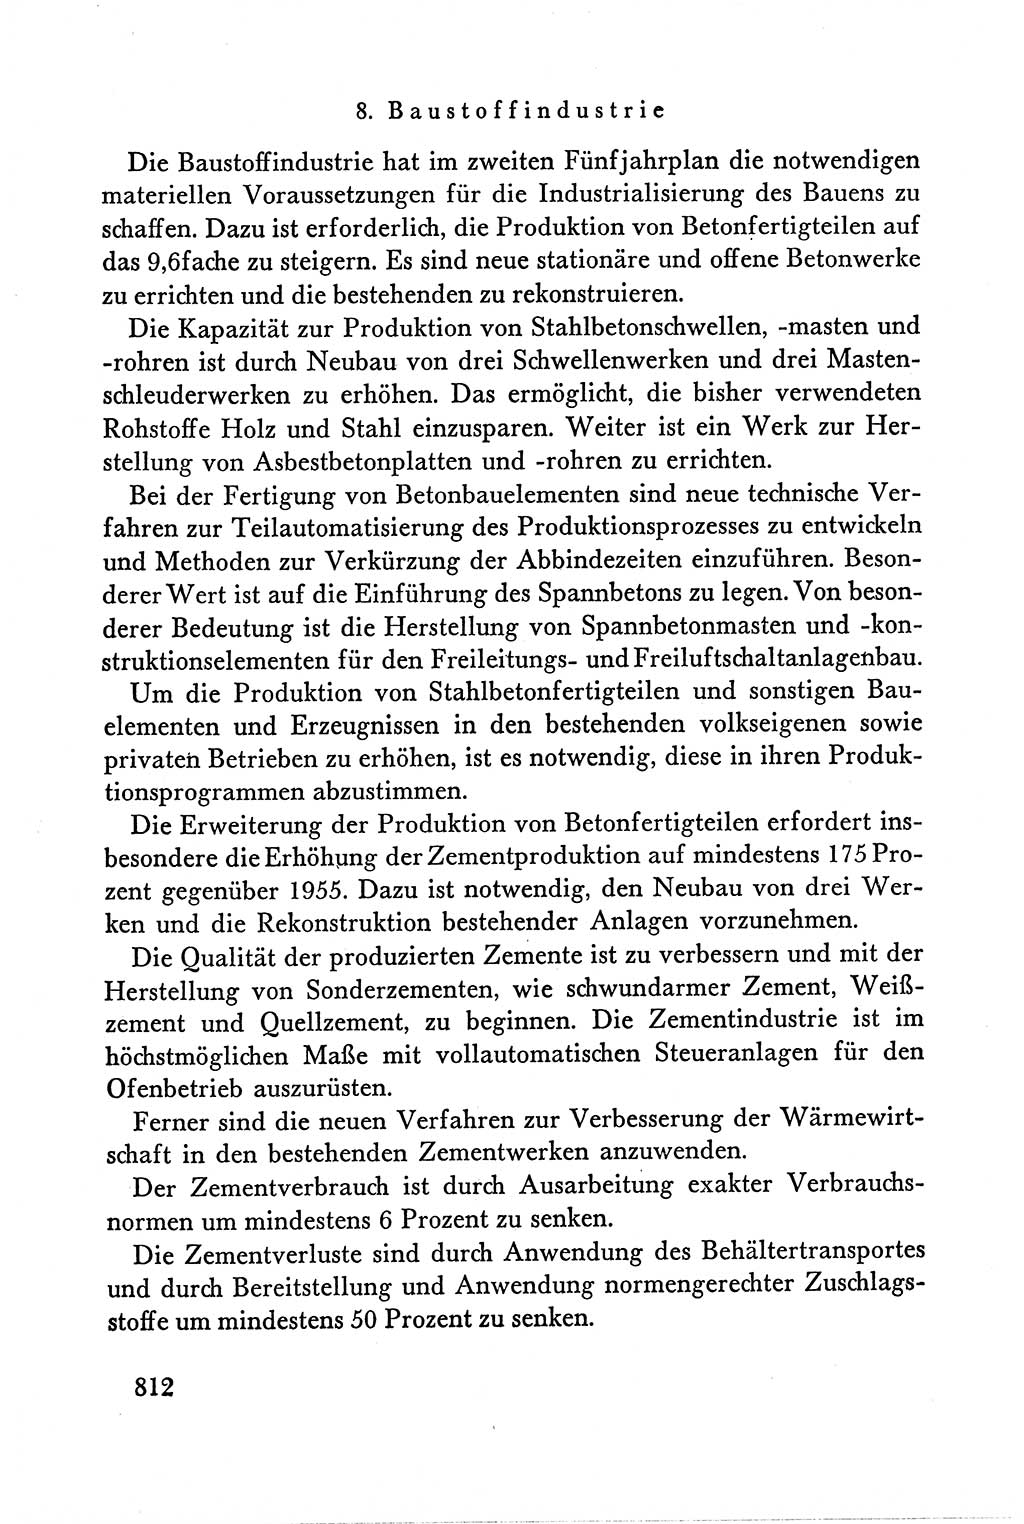 Dokumente der Sozialistischen Einheitspartei Deutschlands (SED) [Deutsche Demokratische Republik (DDR)] 1958-1959, Seite 812 (Dok. SED DDR 1958-1959, S. 812)